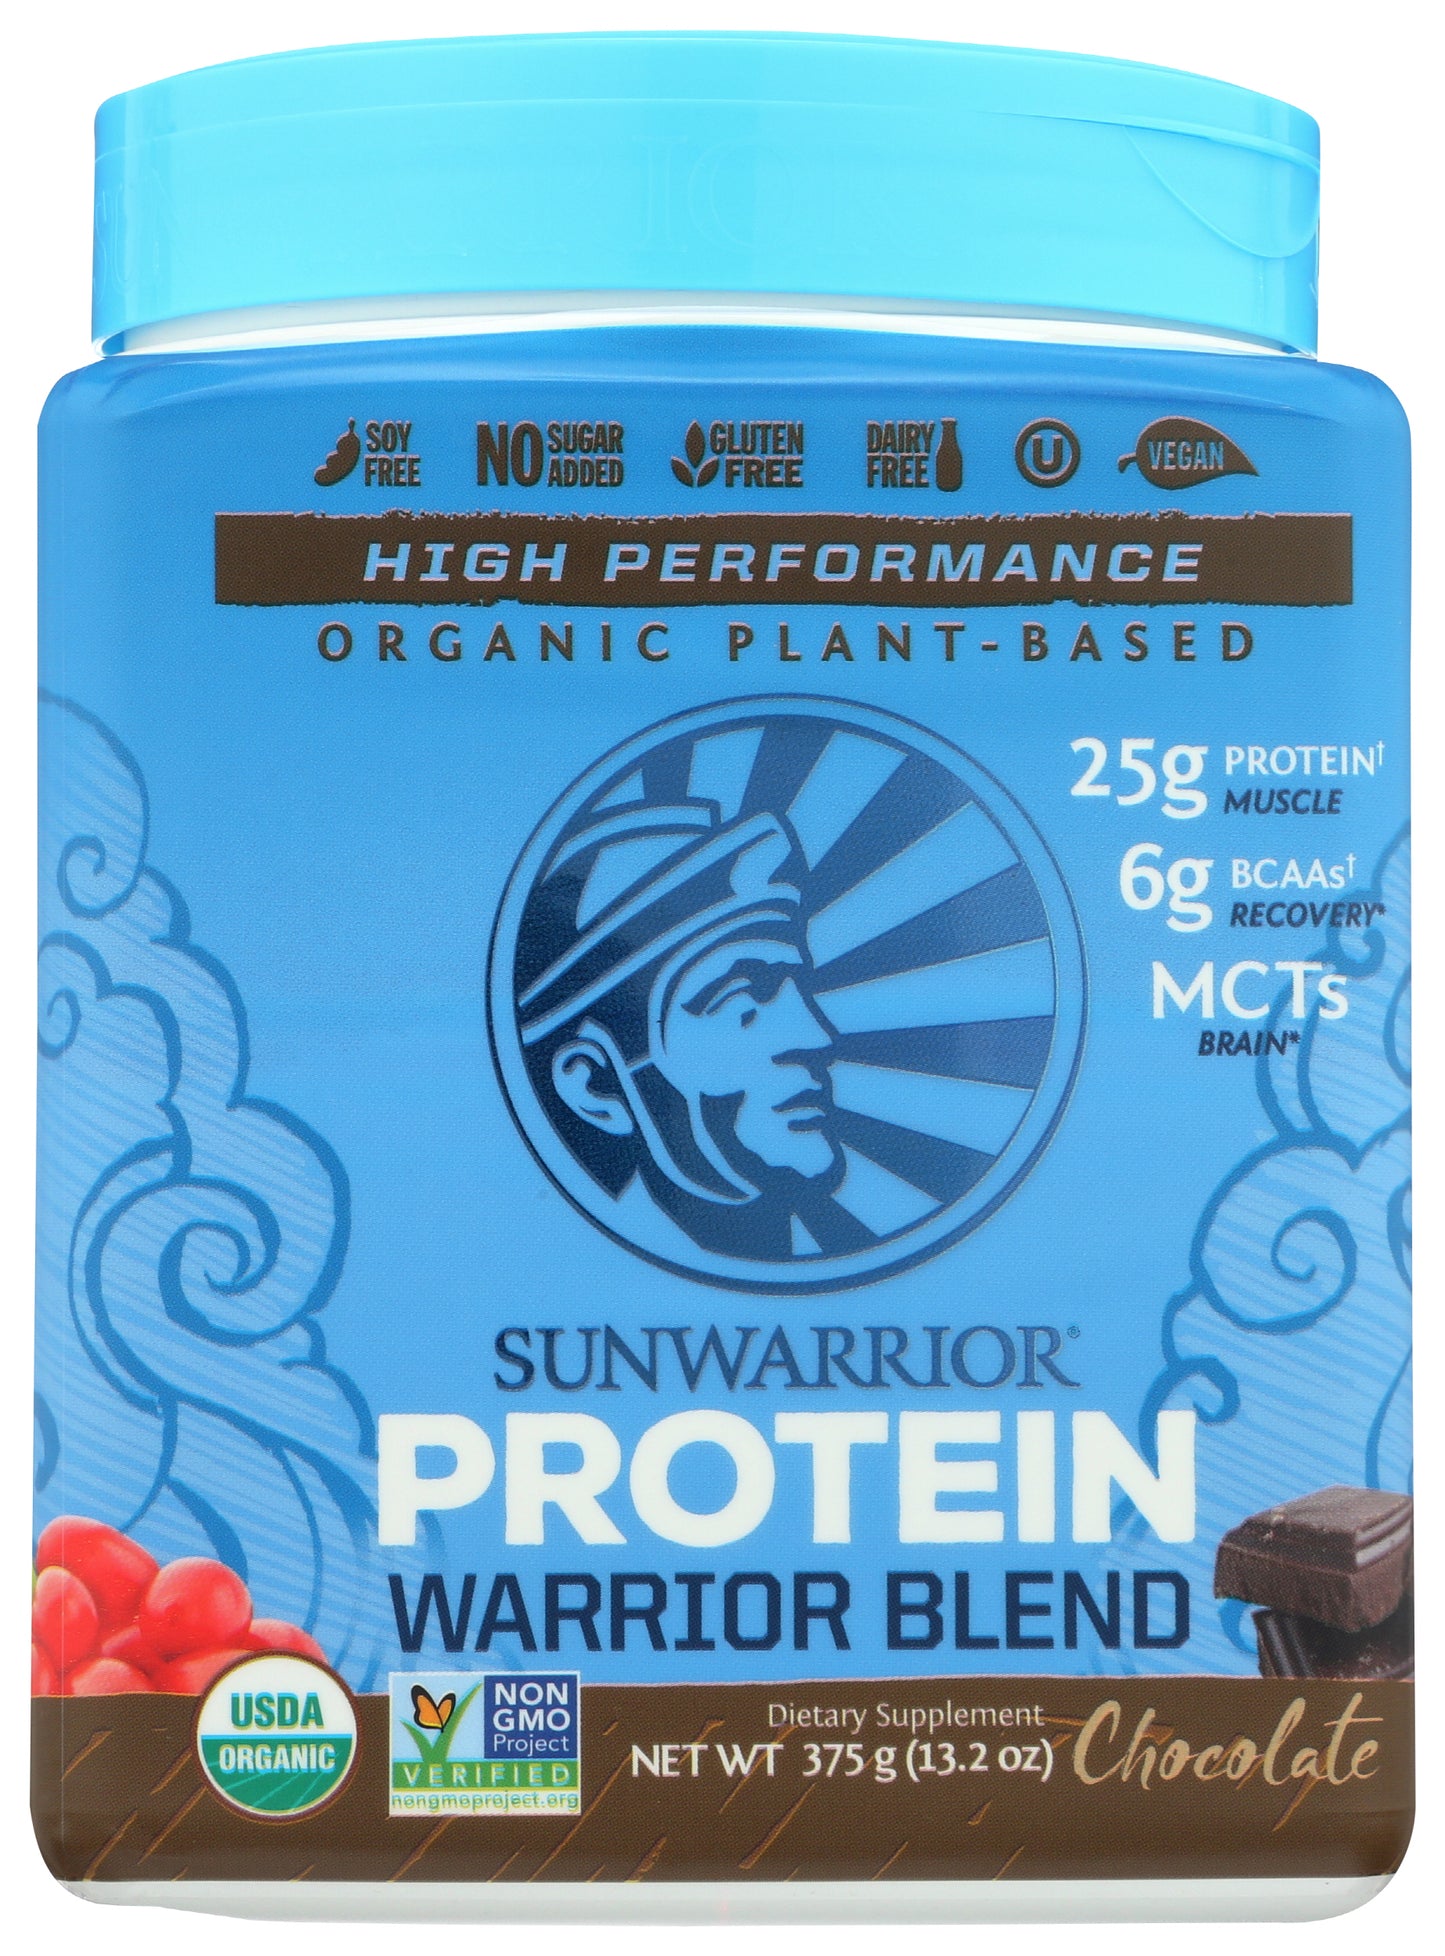 Sunwarrior Protein Powder Warrior Blend Chocolate Flavor 375g Front of Bottle